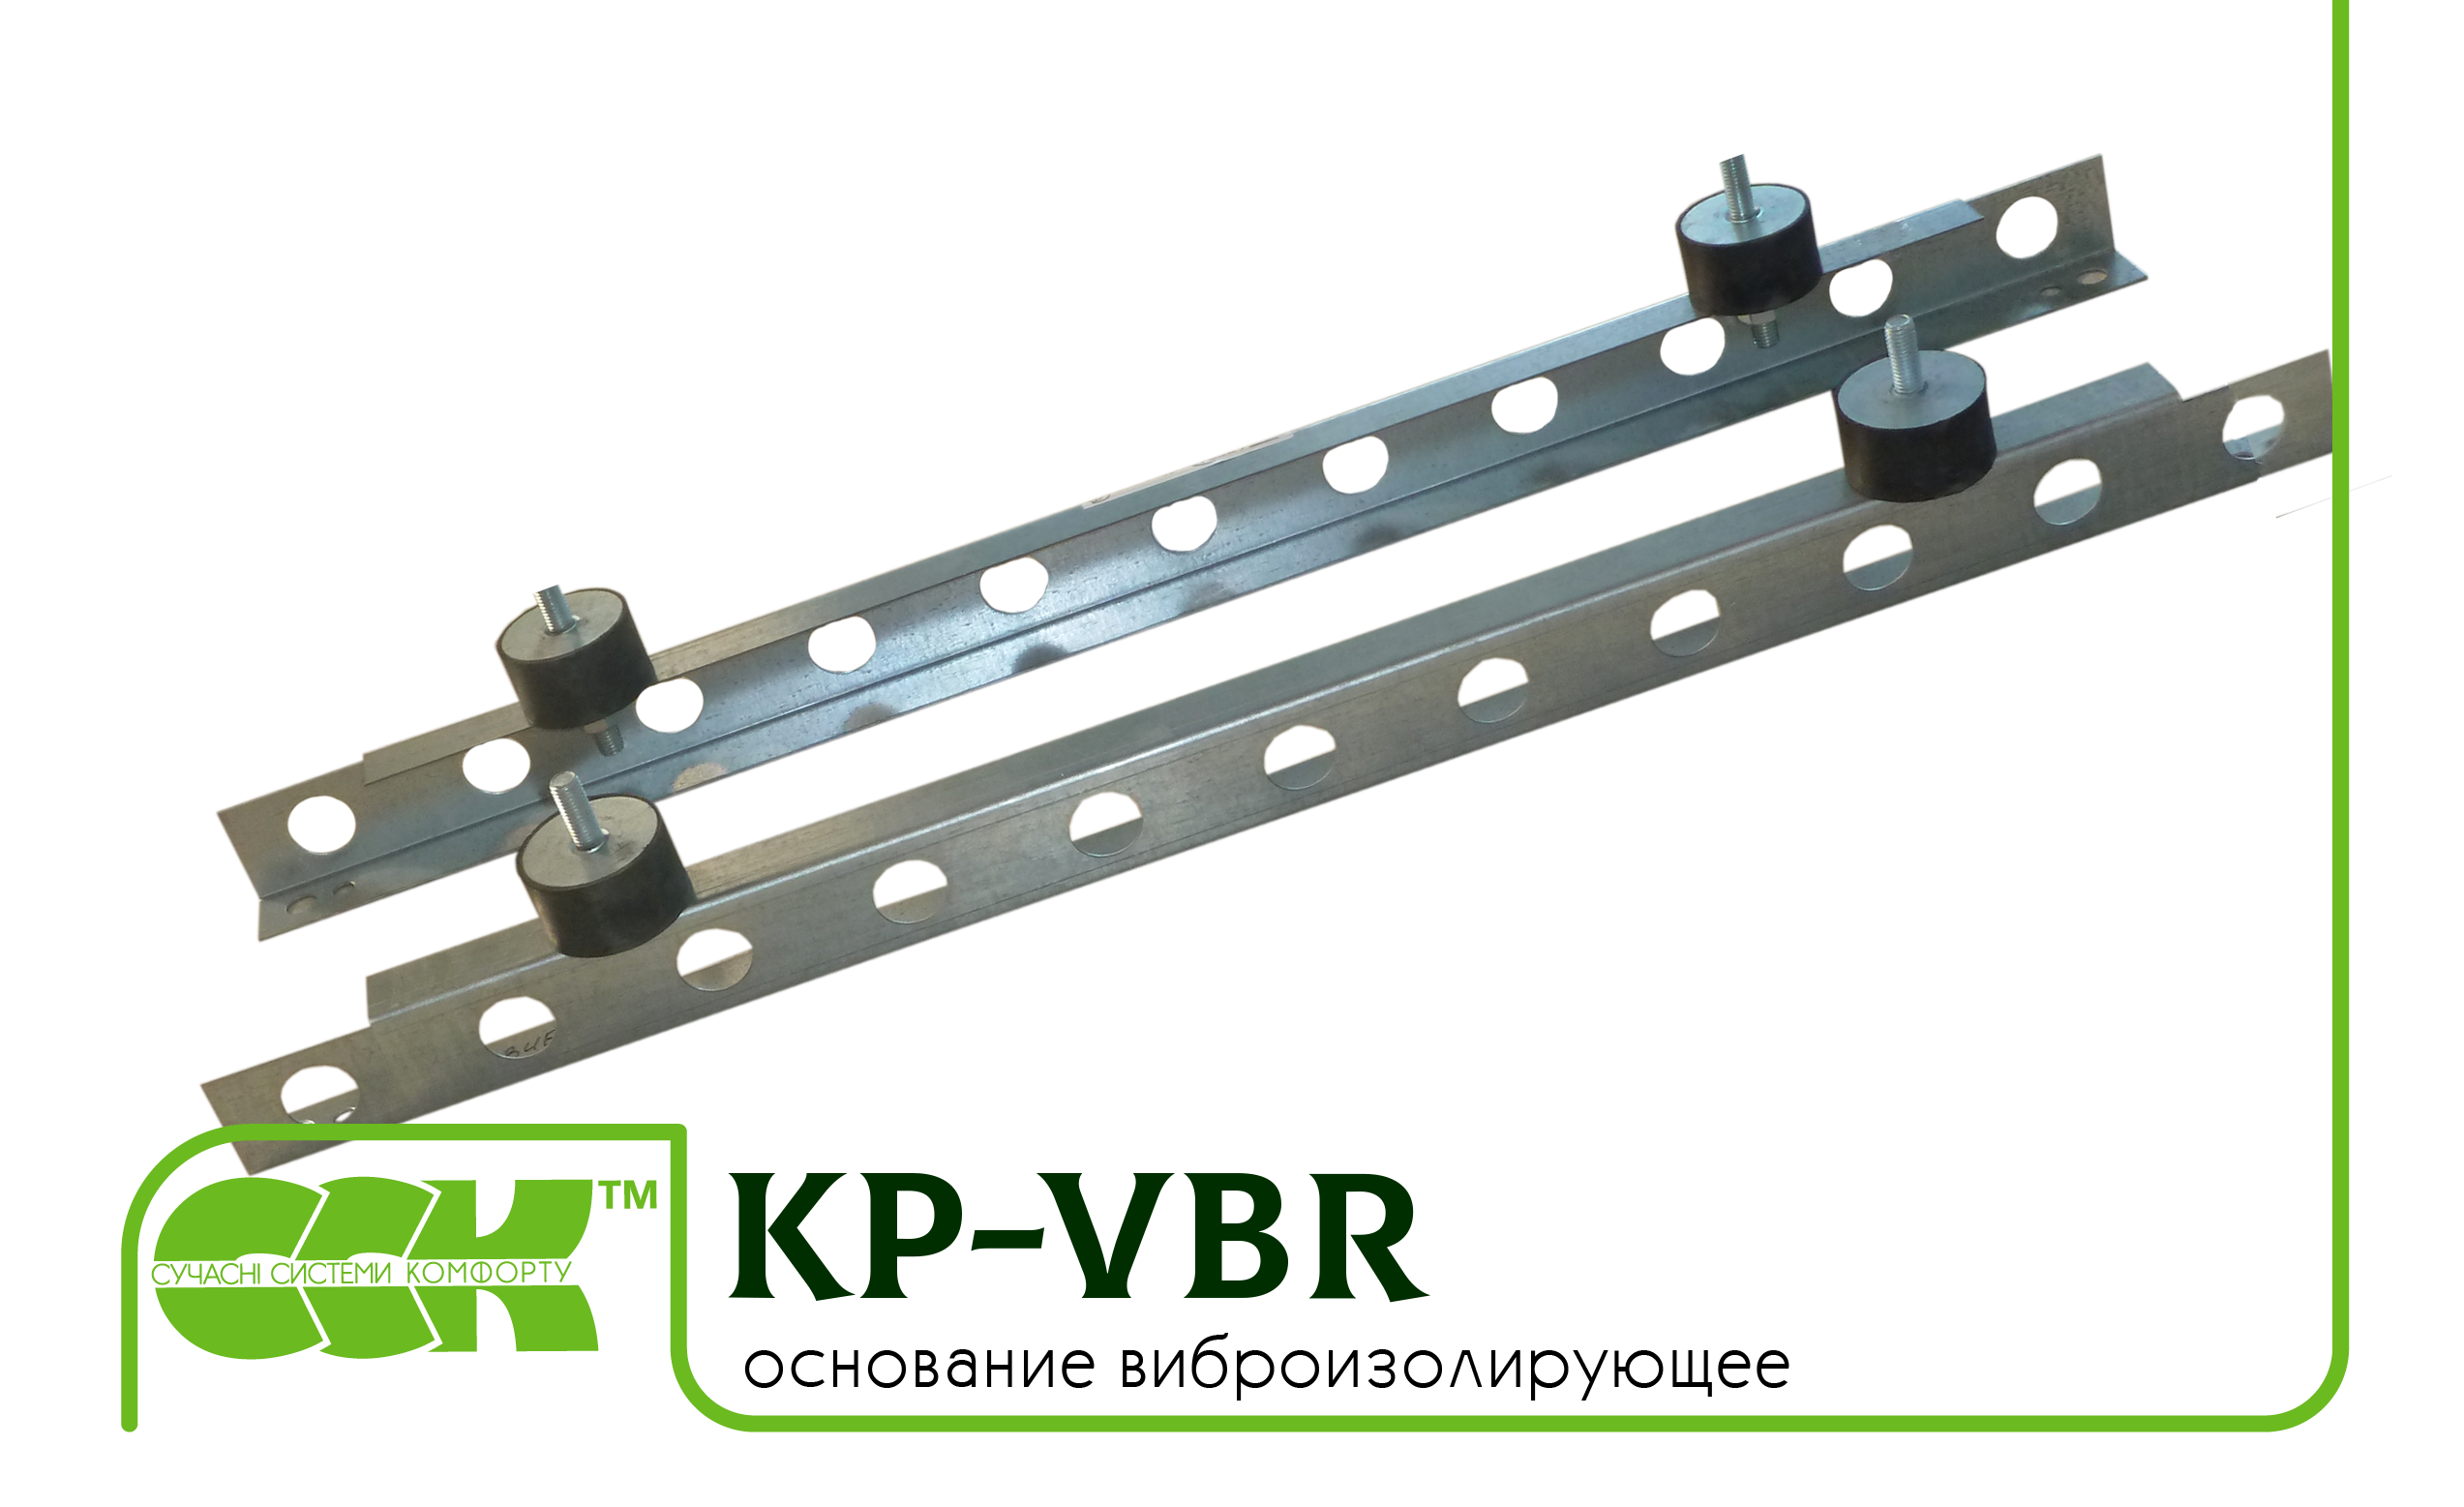 Основание виброизолирующее KP-VBR-80-80